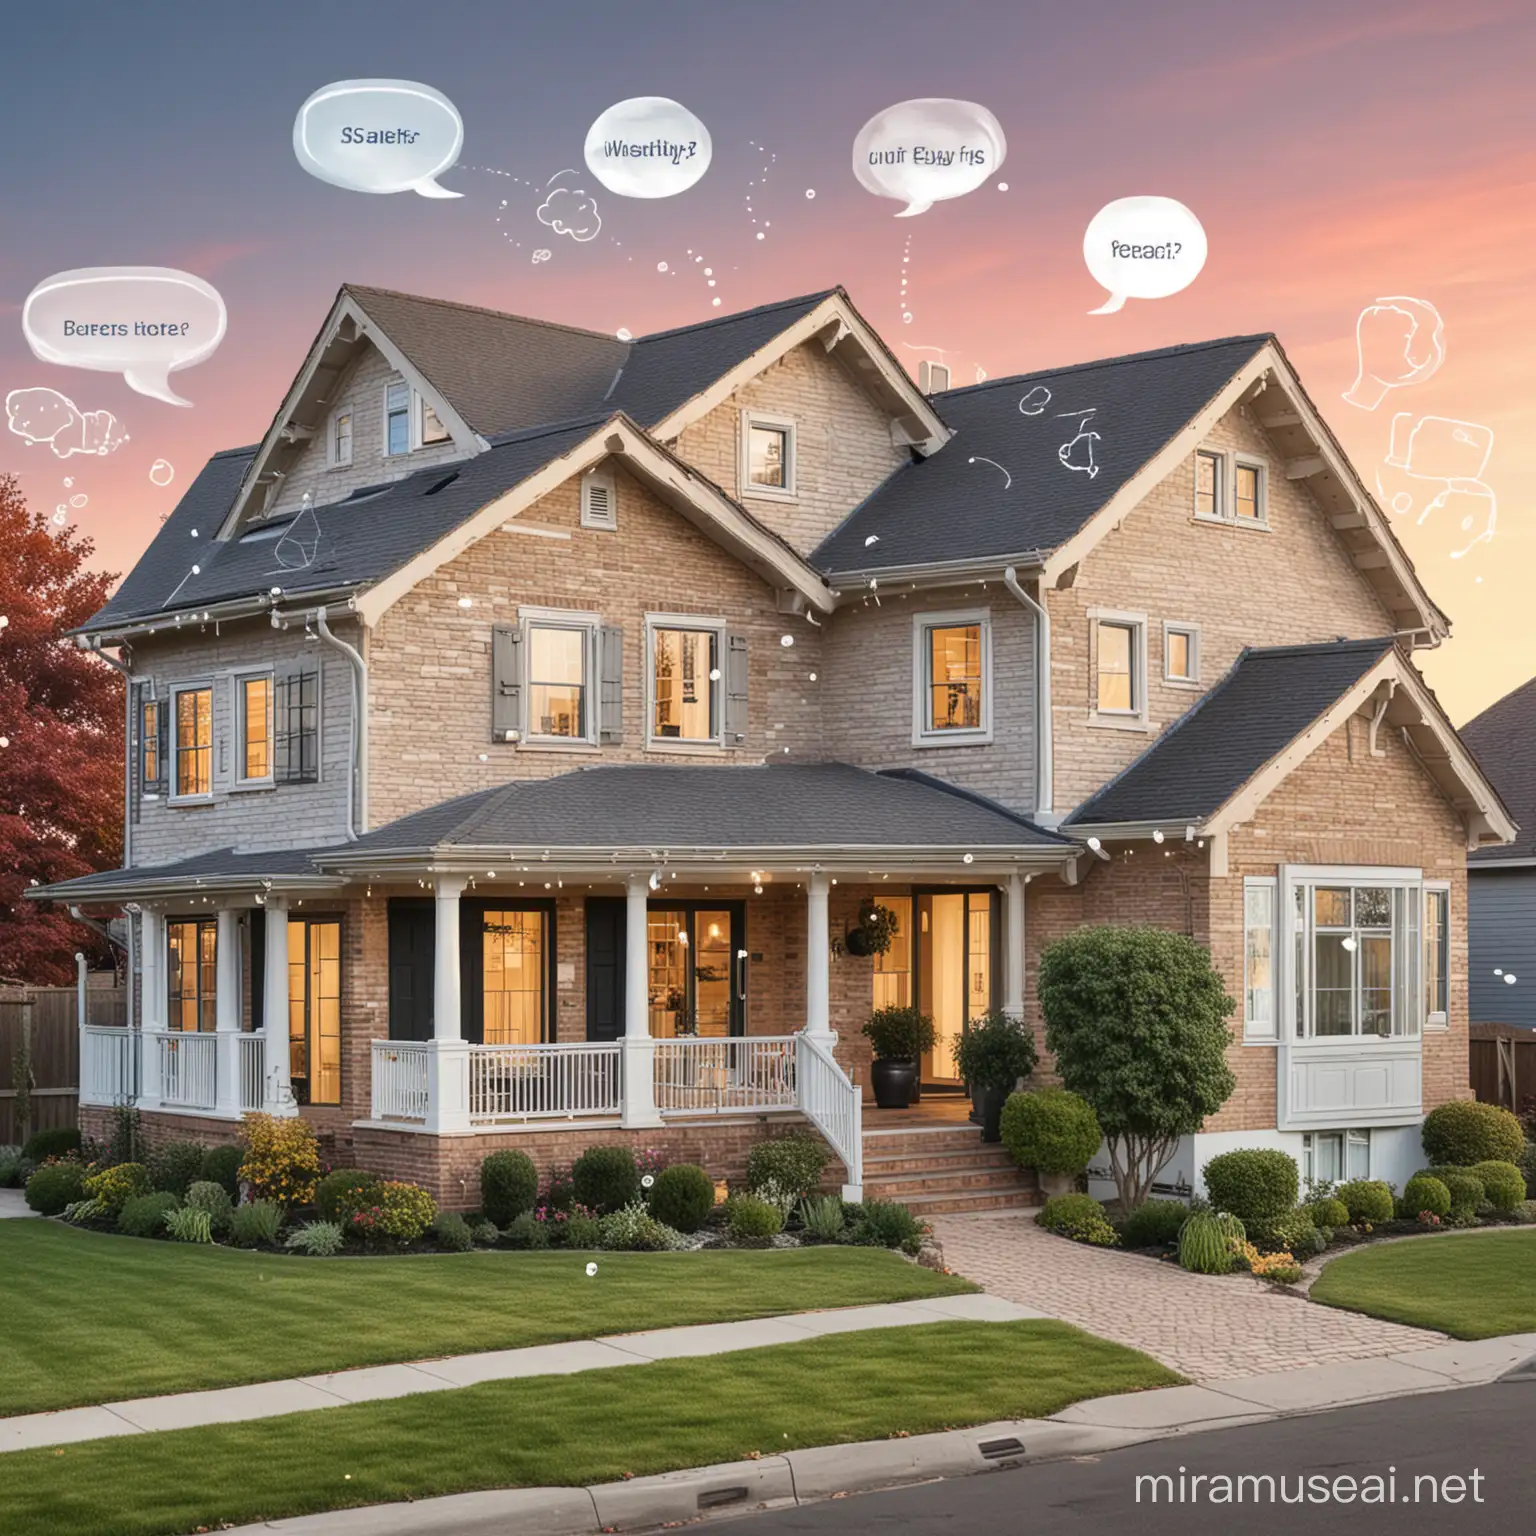 Une image présentant une maison de rêve avec des bulles de texte mettant en évidence les avantages du guide d'achat.